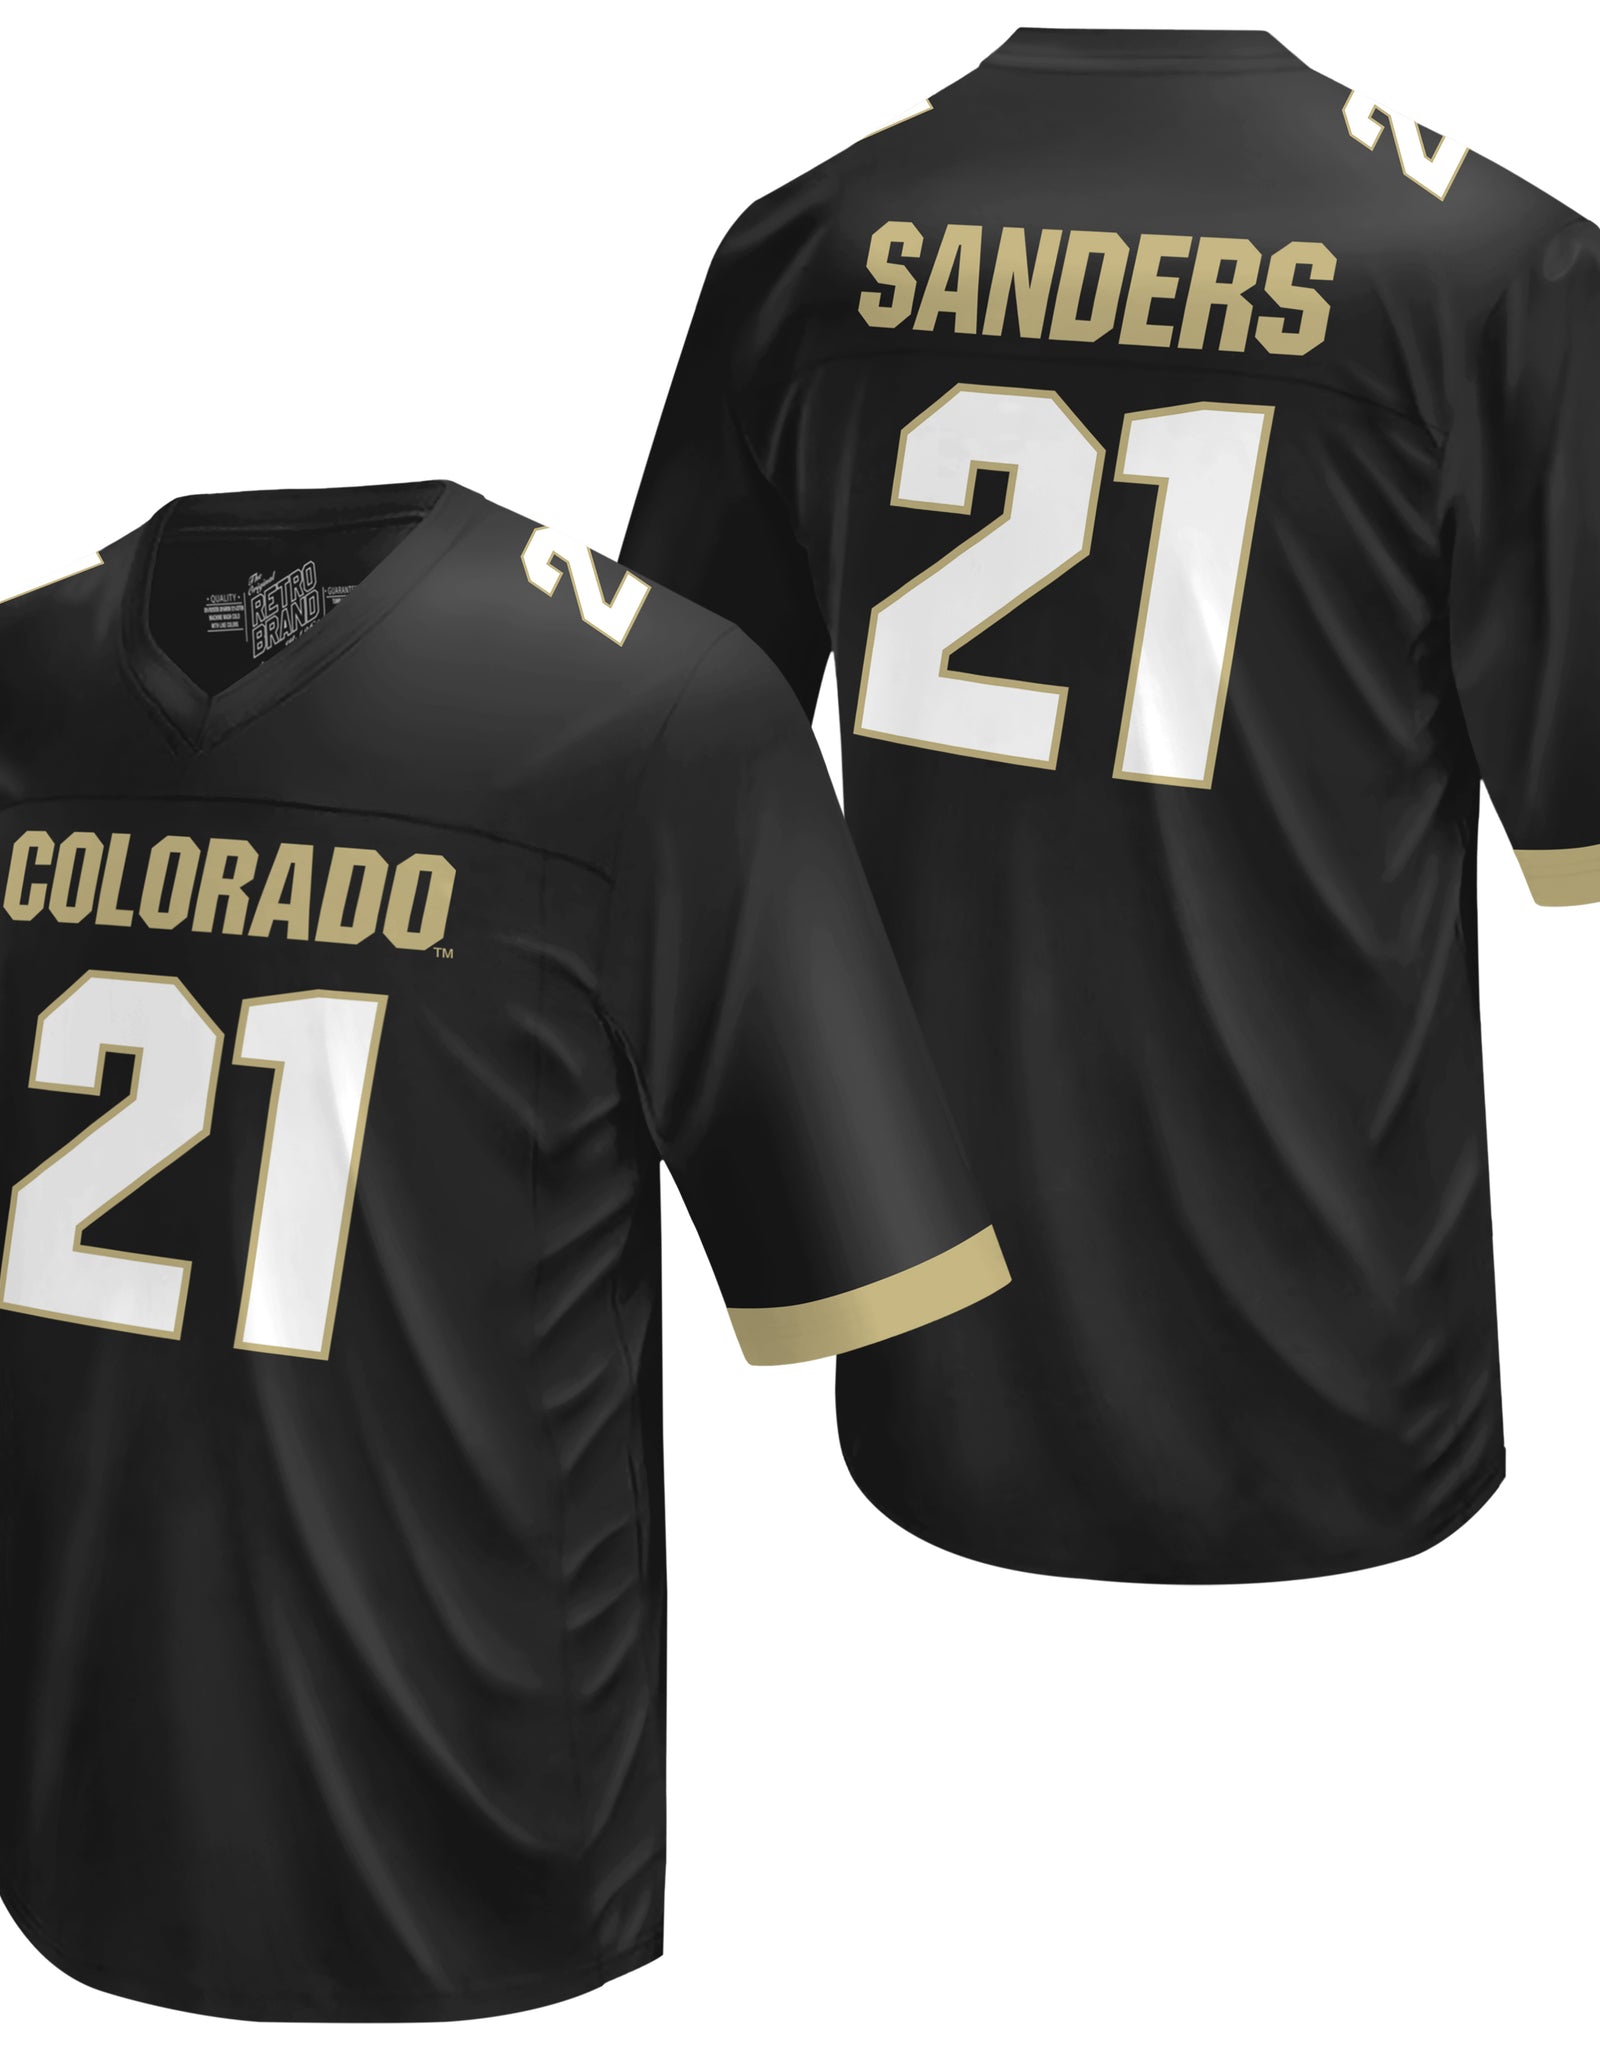 Colorado Buffaloes Shilo Sanders Football Jersey – ORIGINAL RETRO